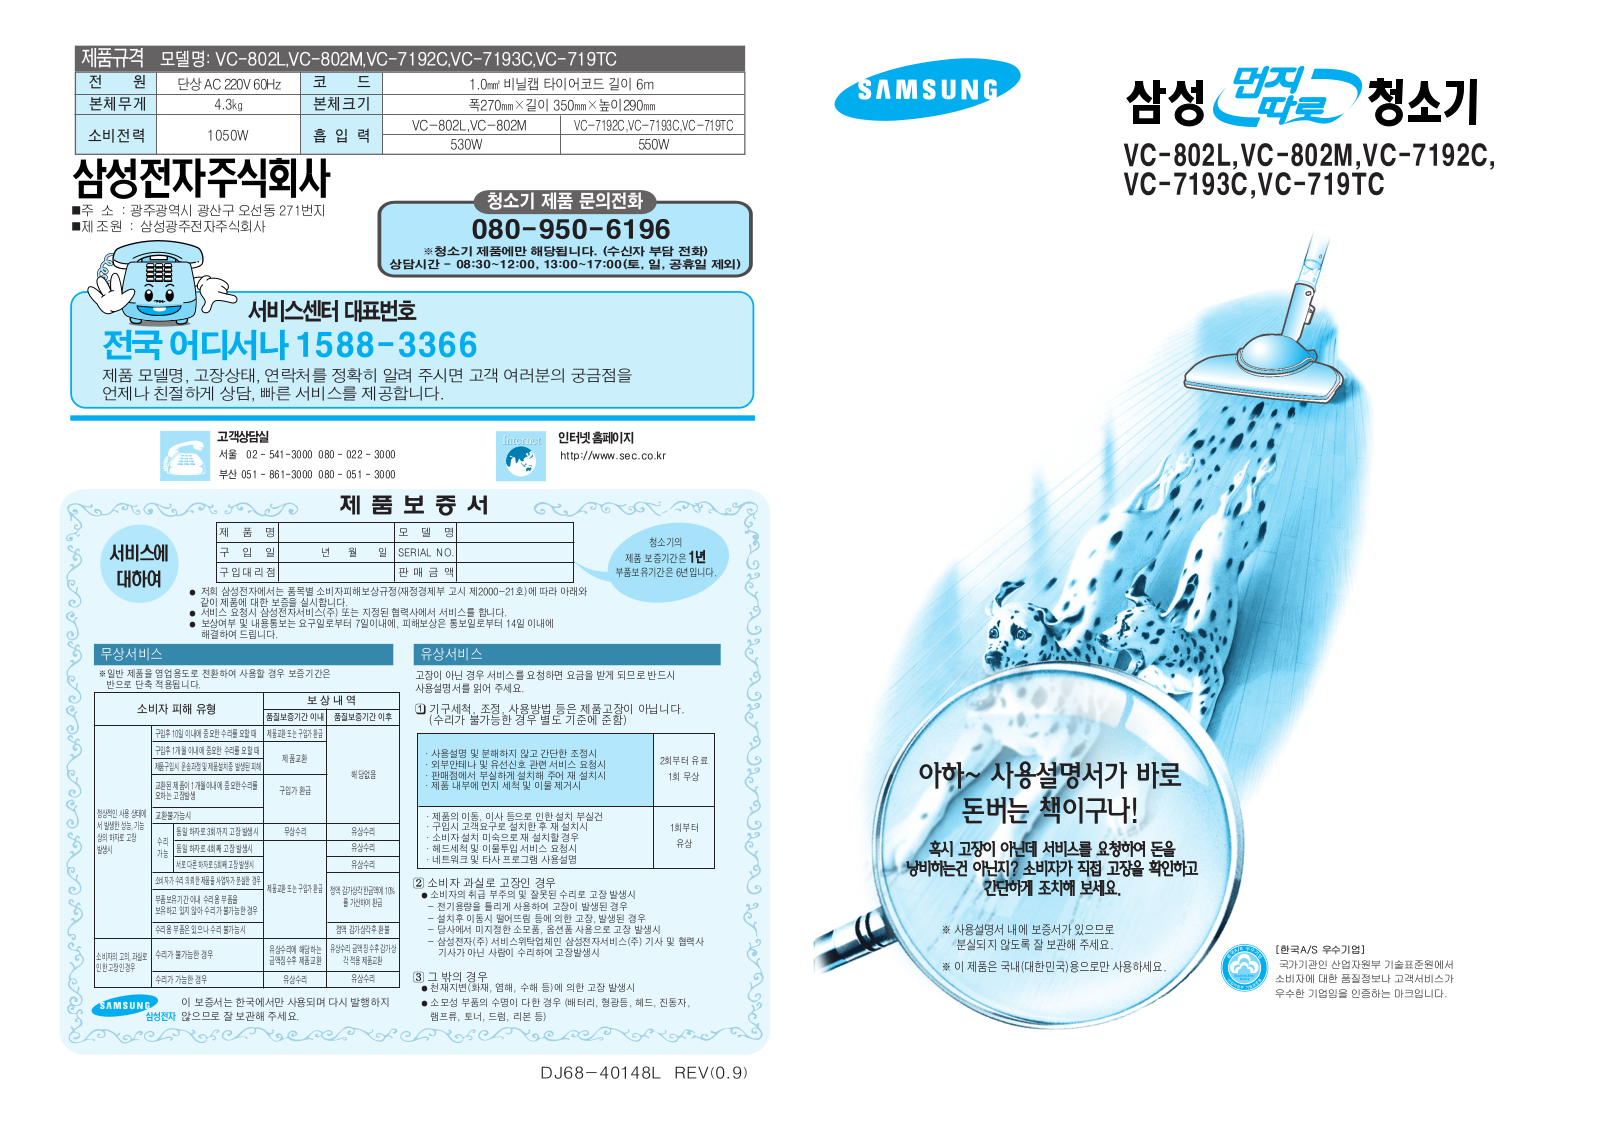 Samsung VC719TC, VC7193C, VC719PC, VC7194C, VC7195C User Manual